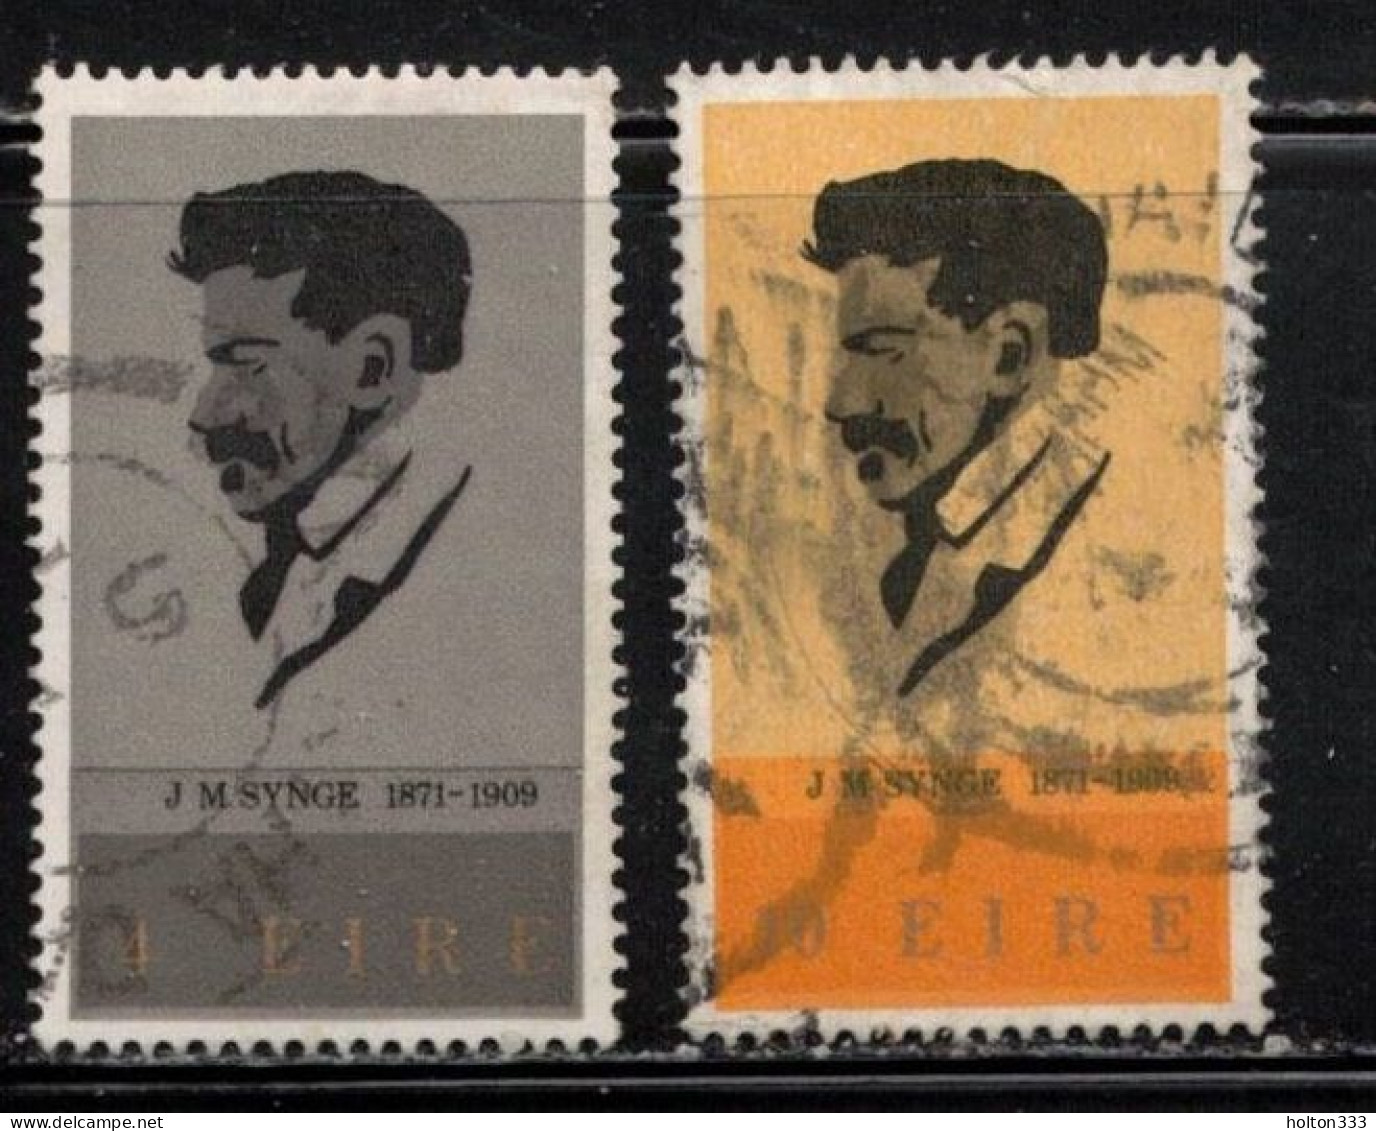 IRELAND Scott # 307-8 Used - John M Synge - Used Stamps